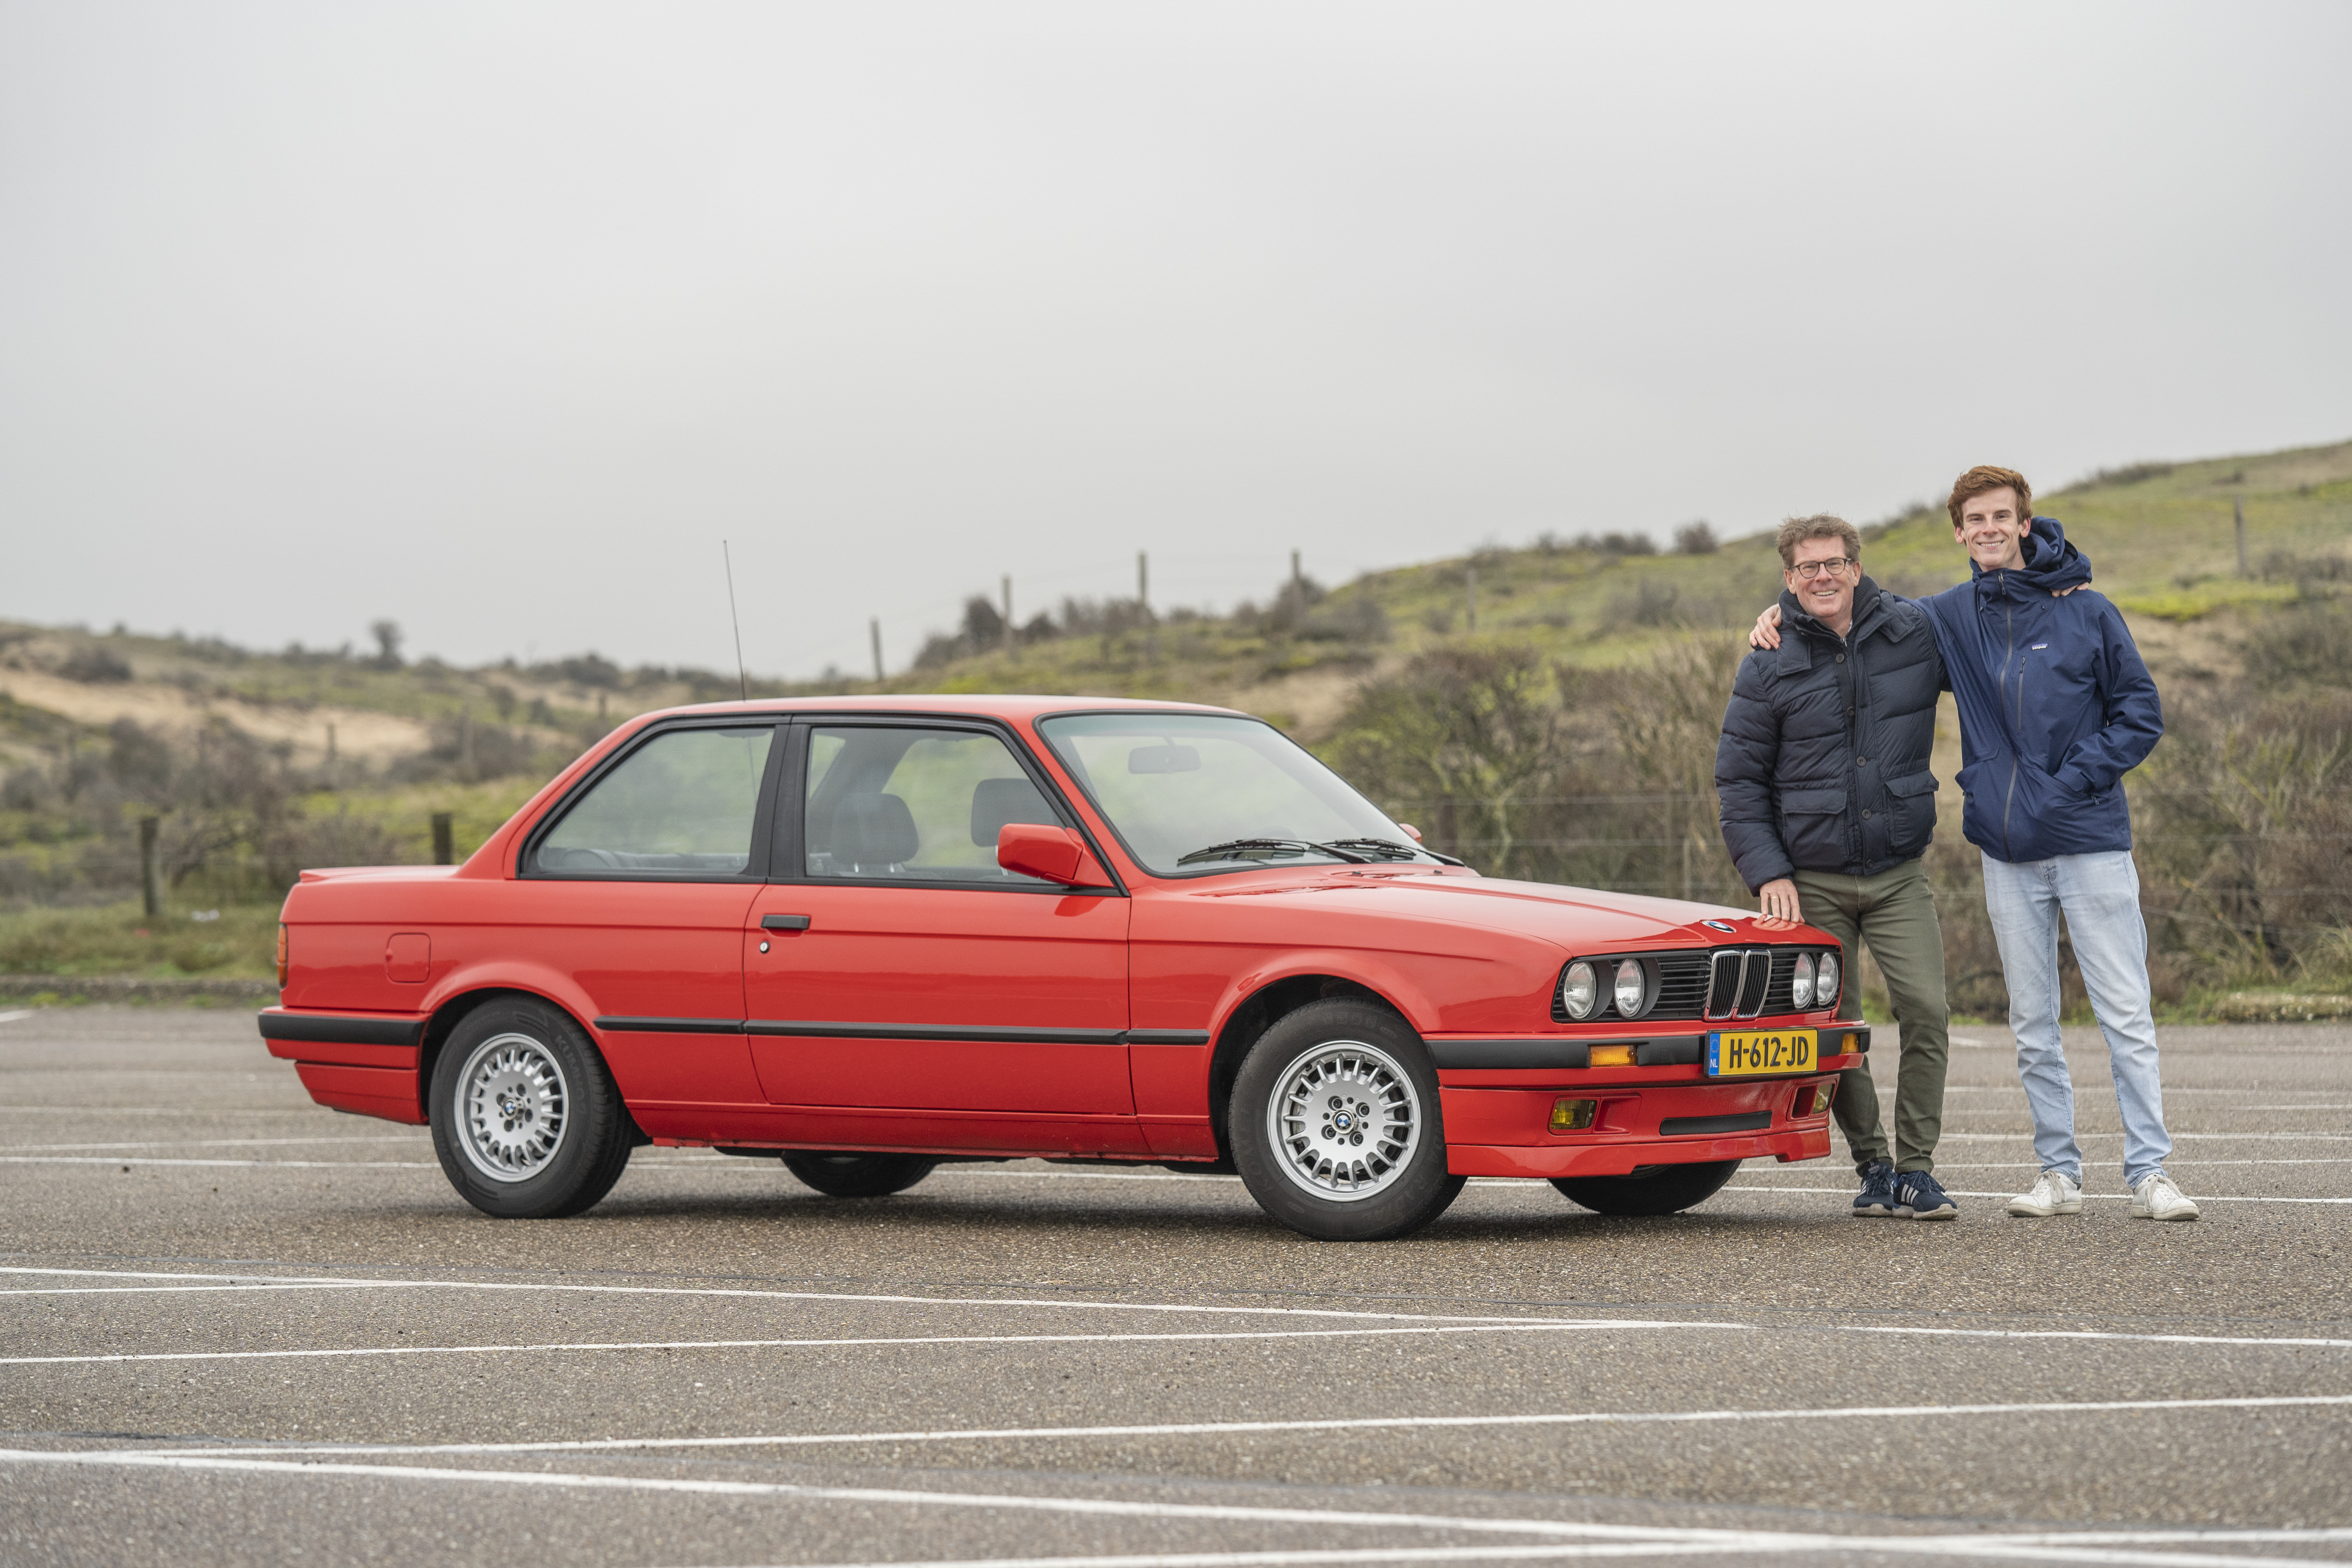 Nietje Veel winter Uw Garage: BMW 318iS (1990)